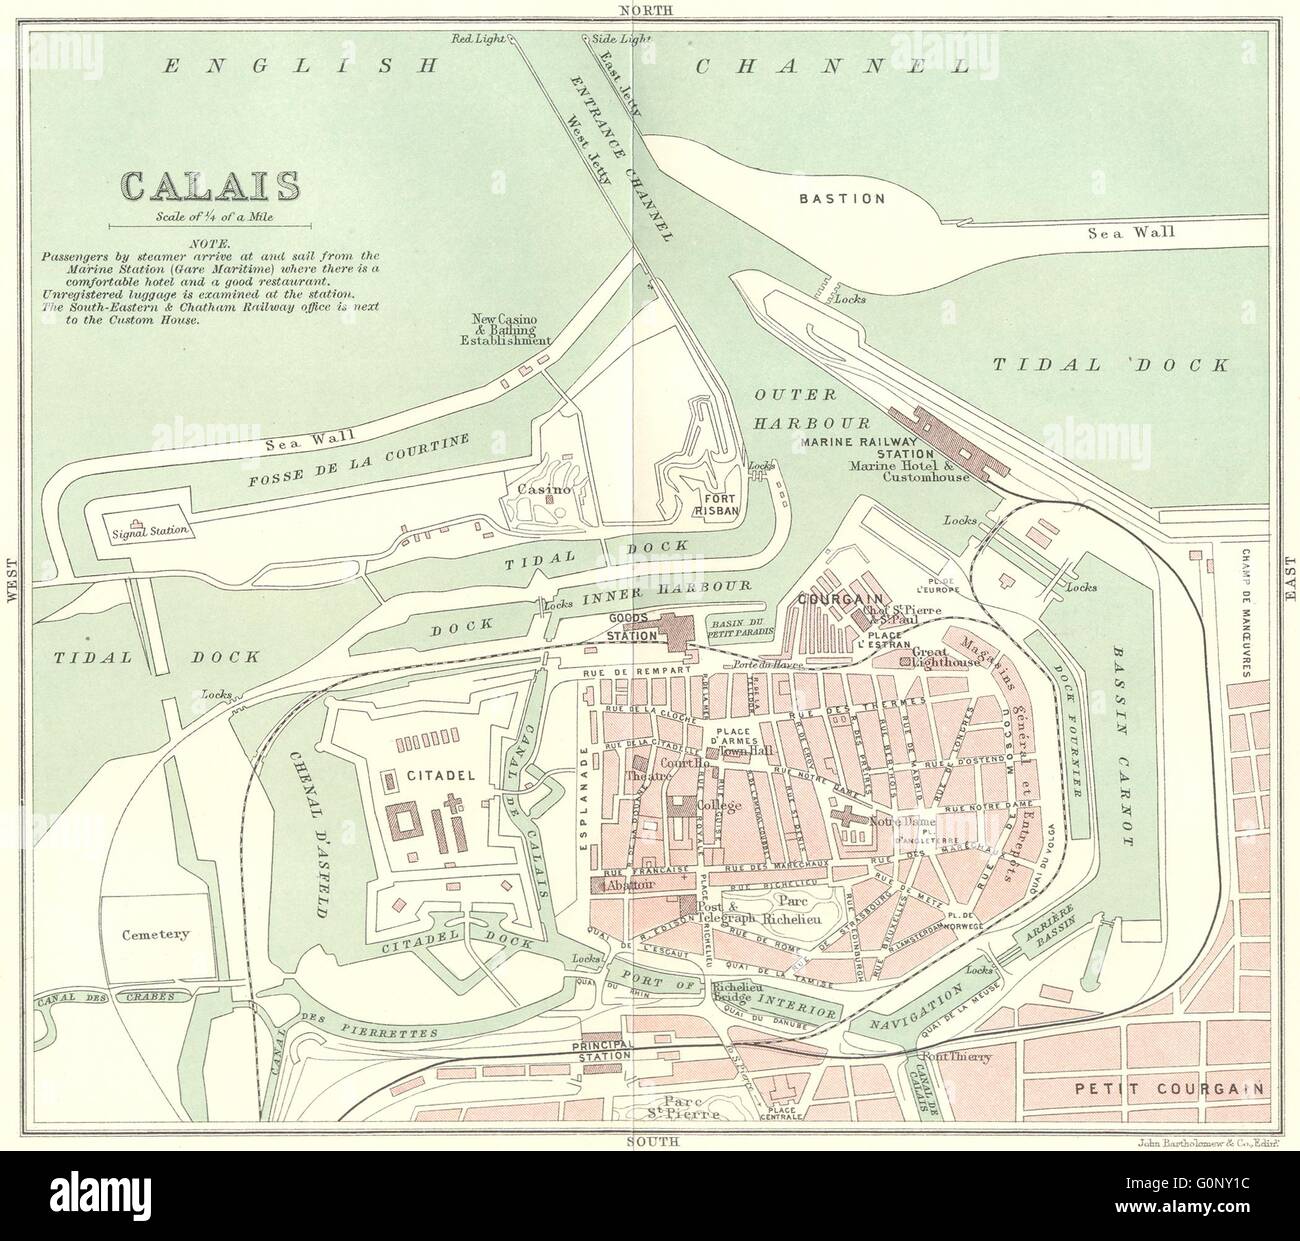 PAS-DE-CALAIS: Calais town plan, 1913 antique map Stock Photo